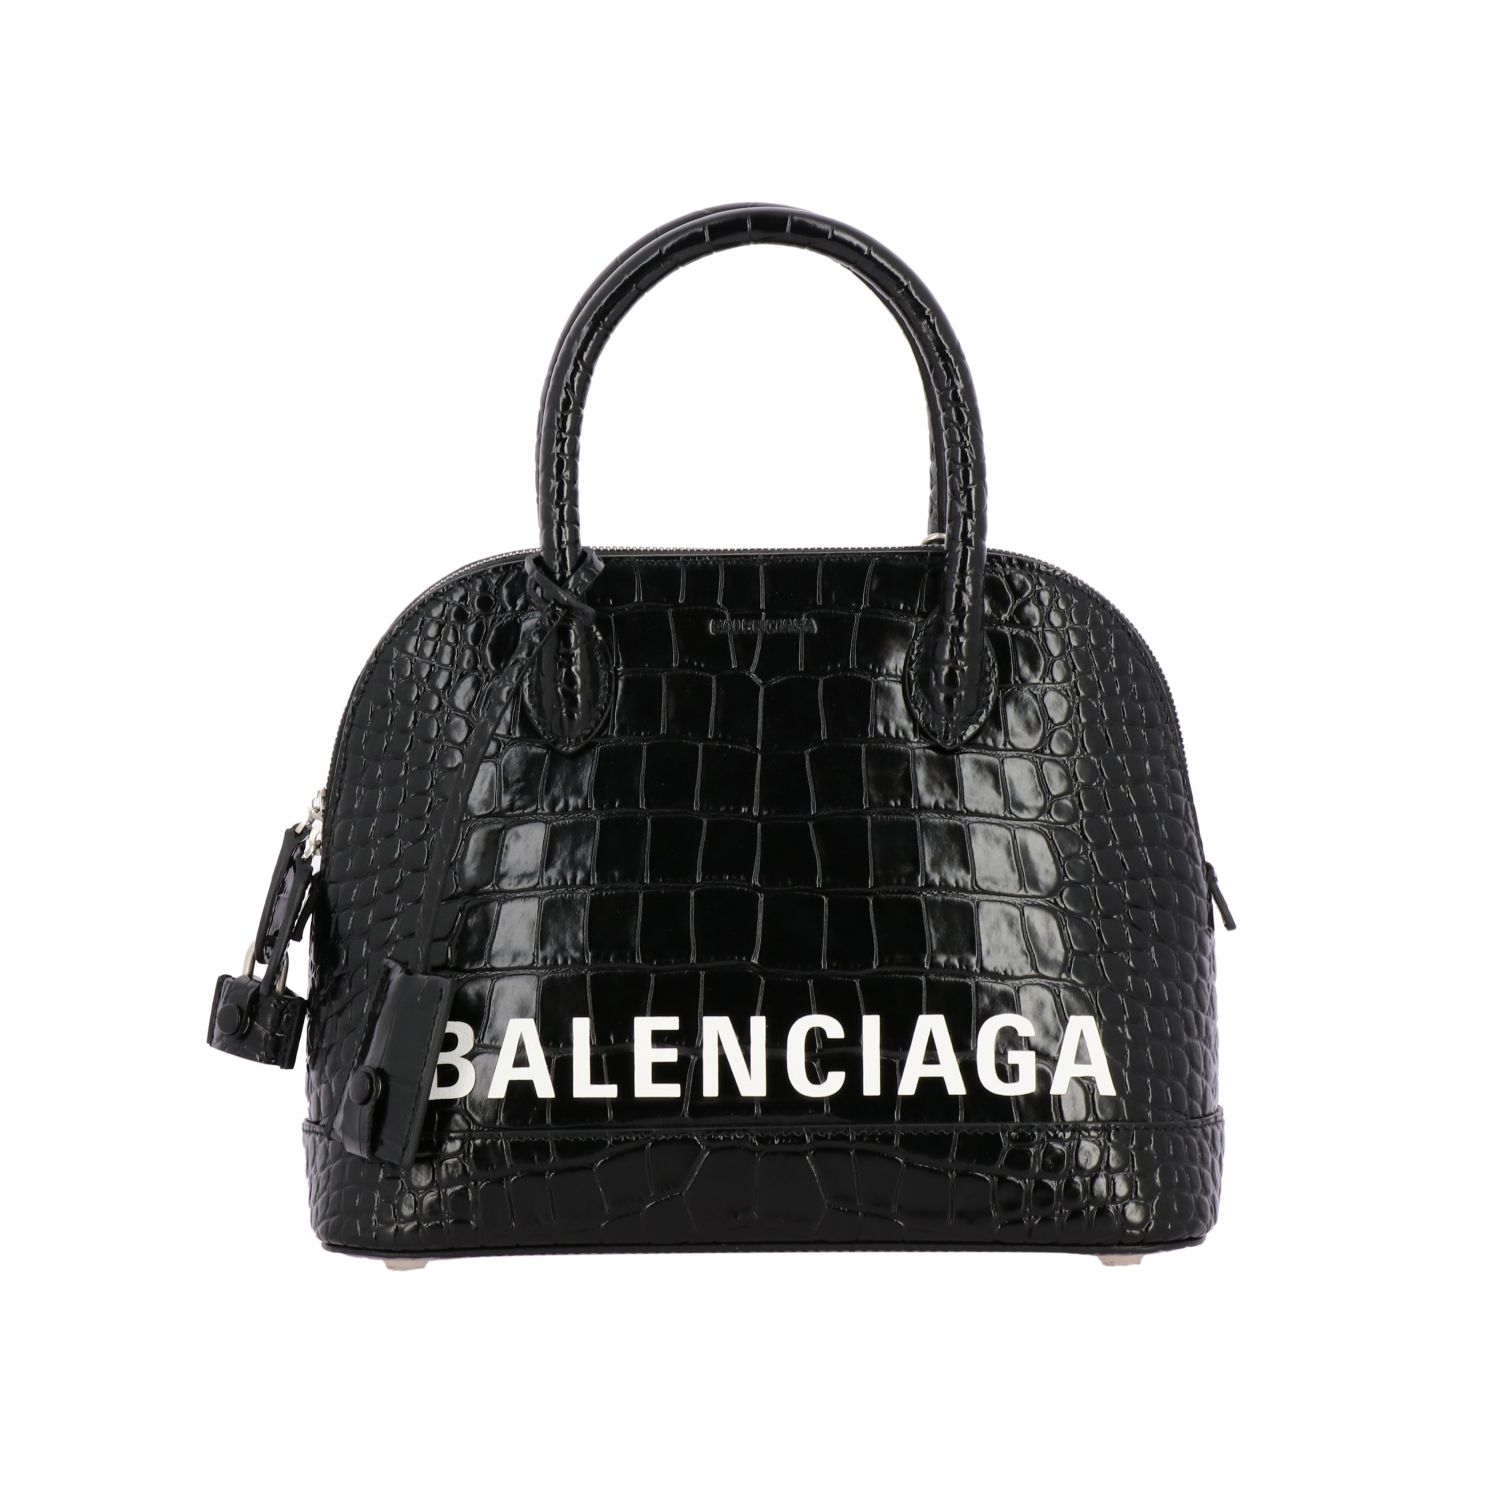 Balenciaga Bag name? : r/handbags